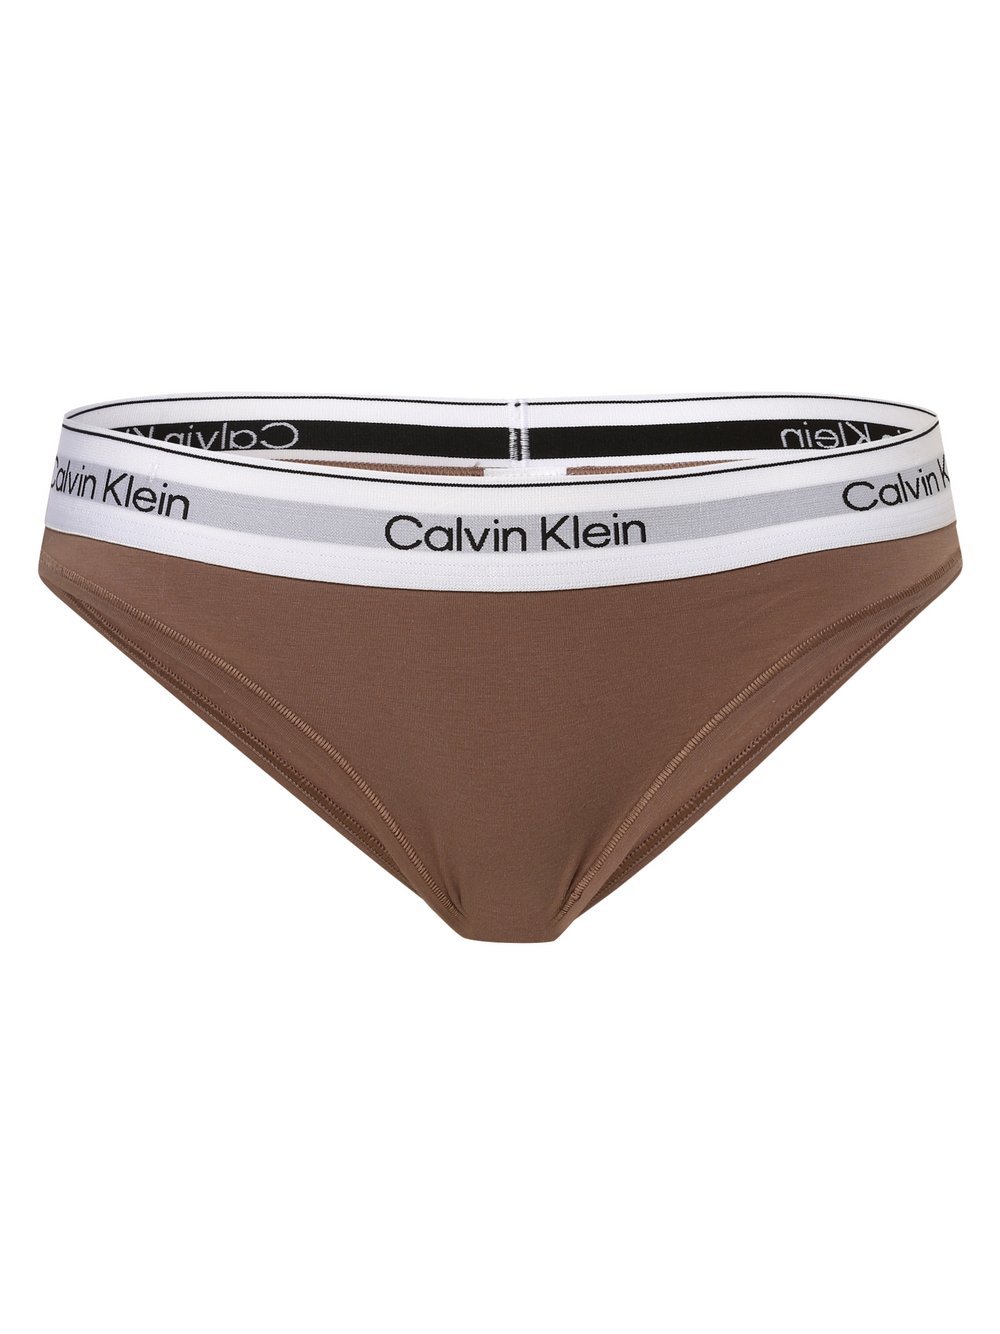 Calvin Klein - Slipy damskie, brązowy